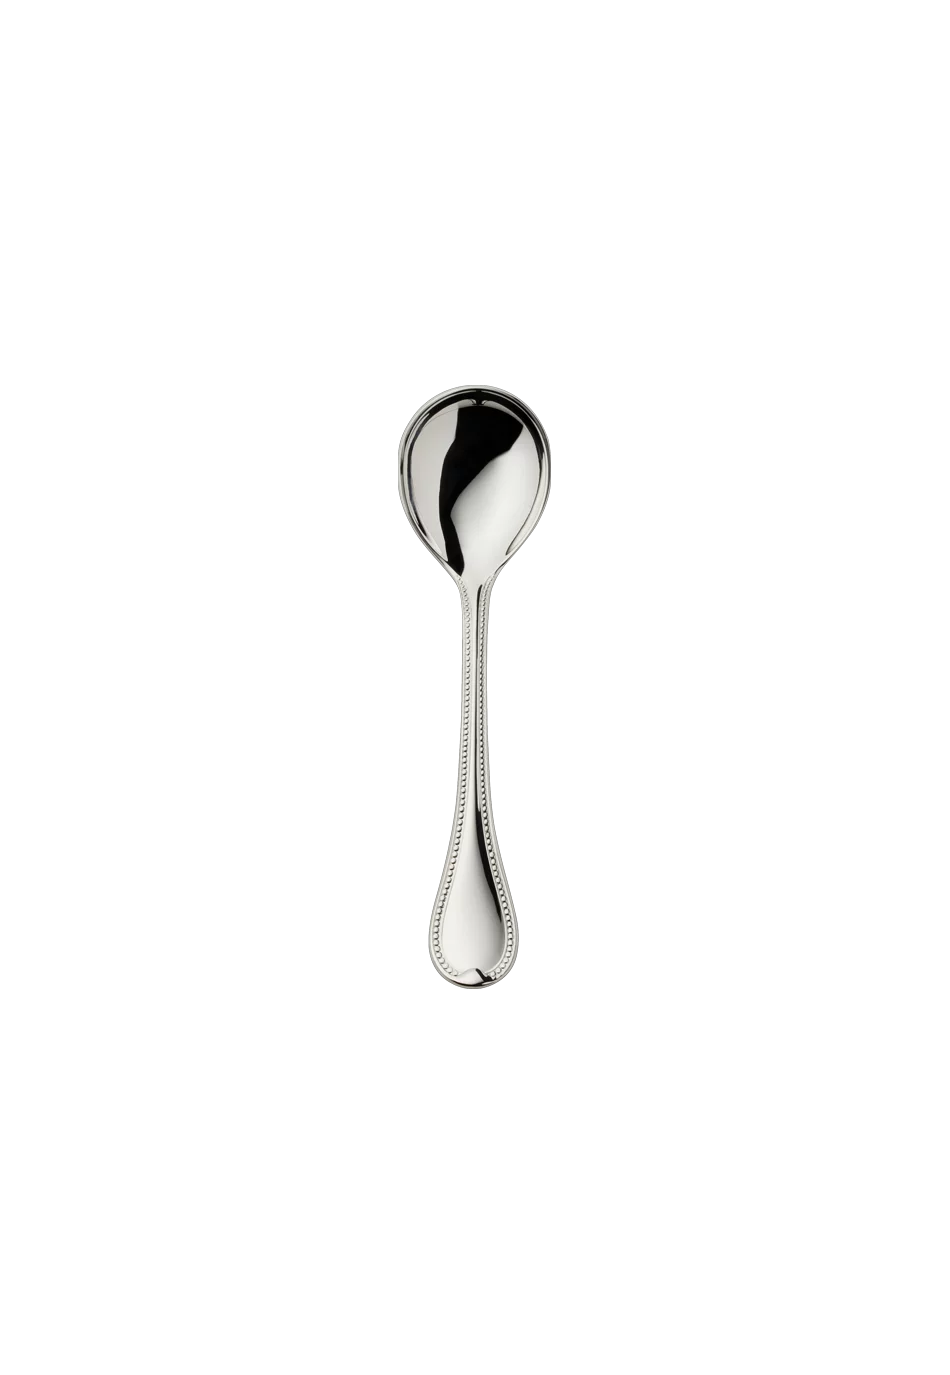 Französisch-Perl Sugar Spoon (150g massive silverplated)